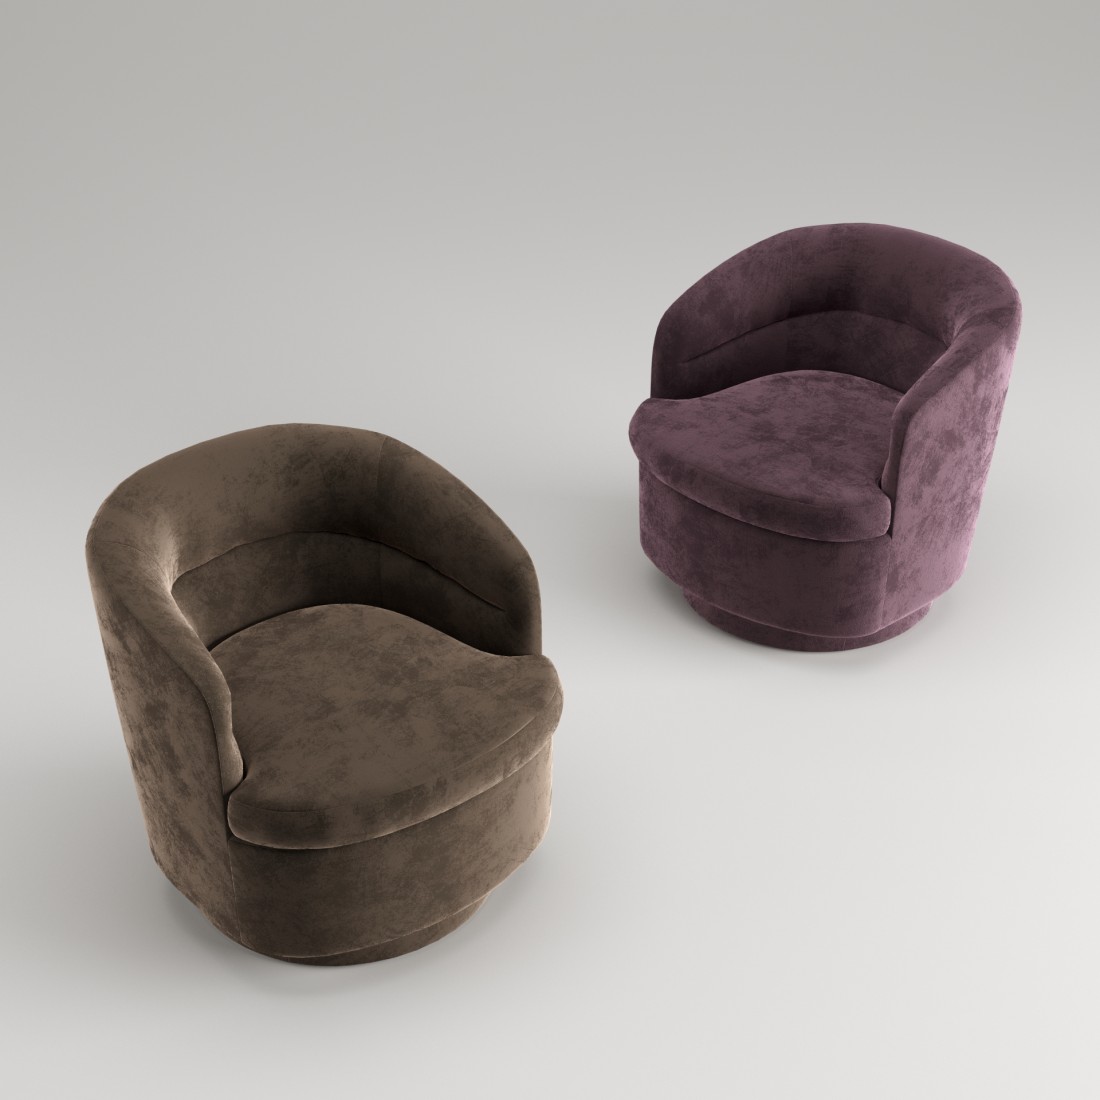 Vİv Swivel Chair 3D Model for VRay, Corona